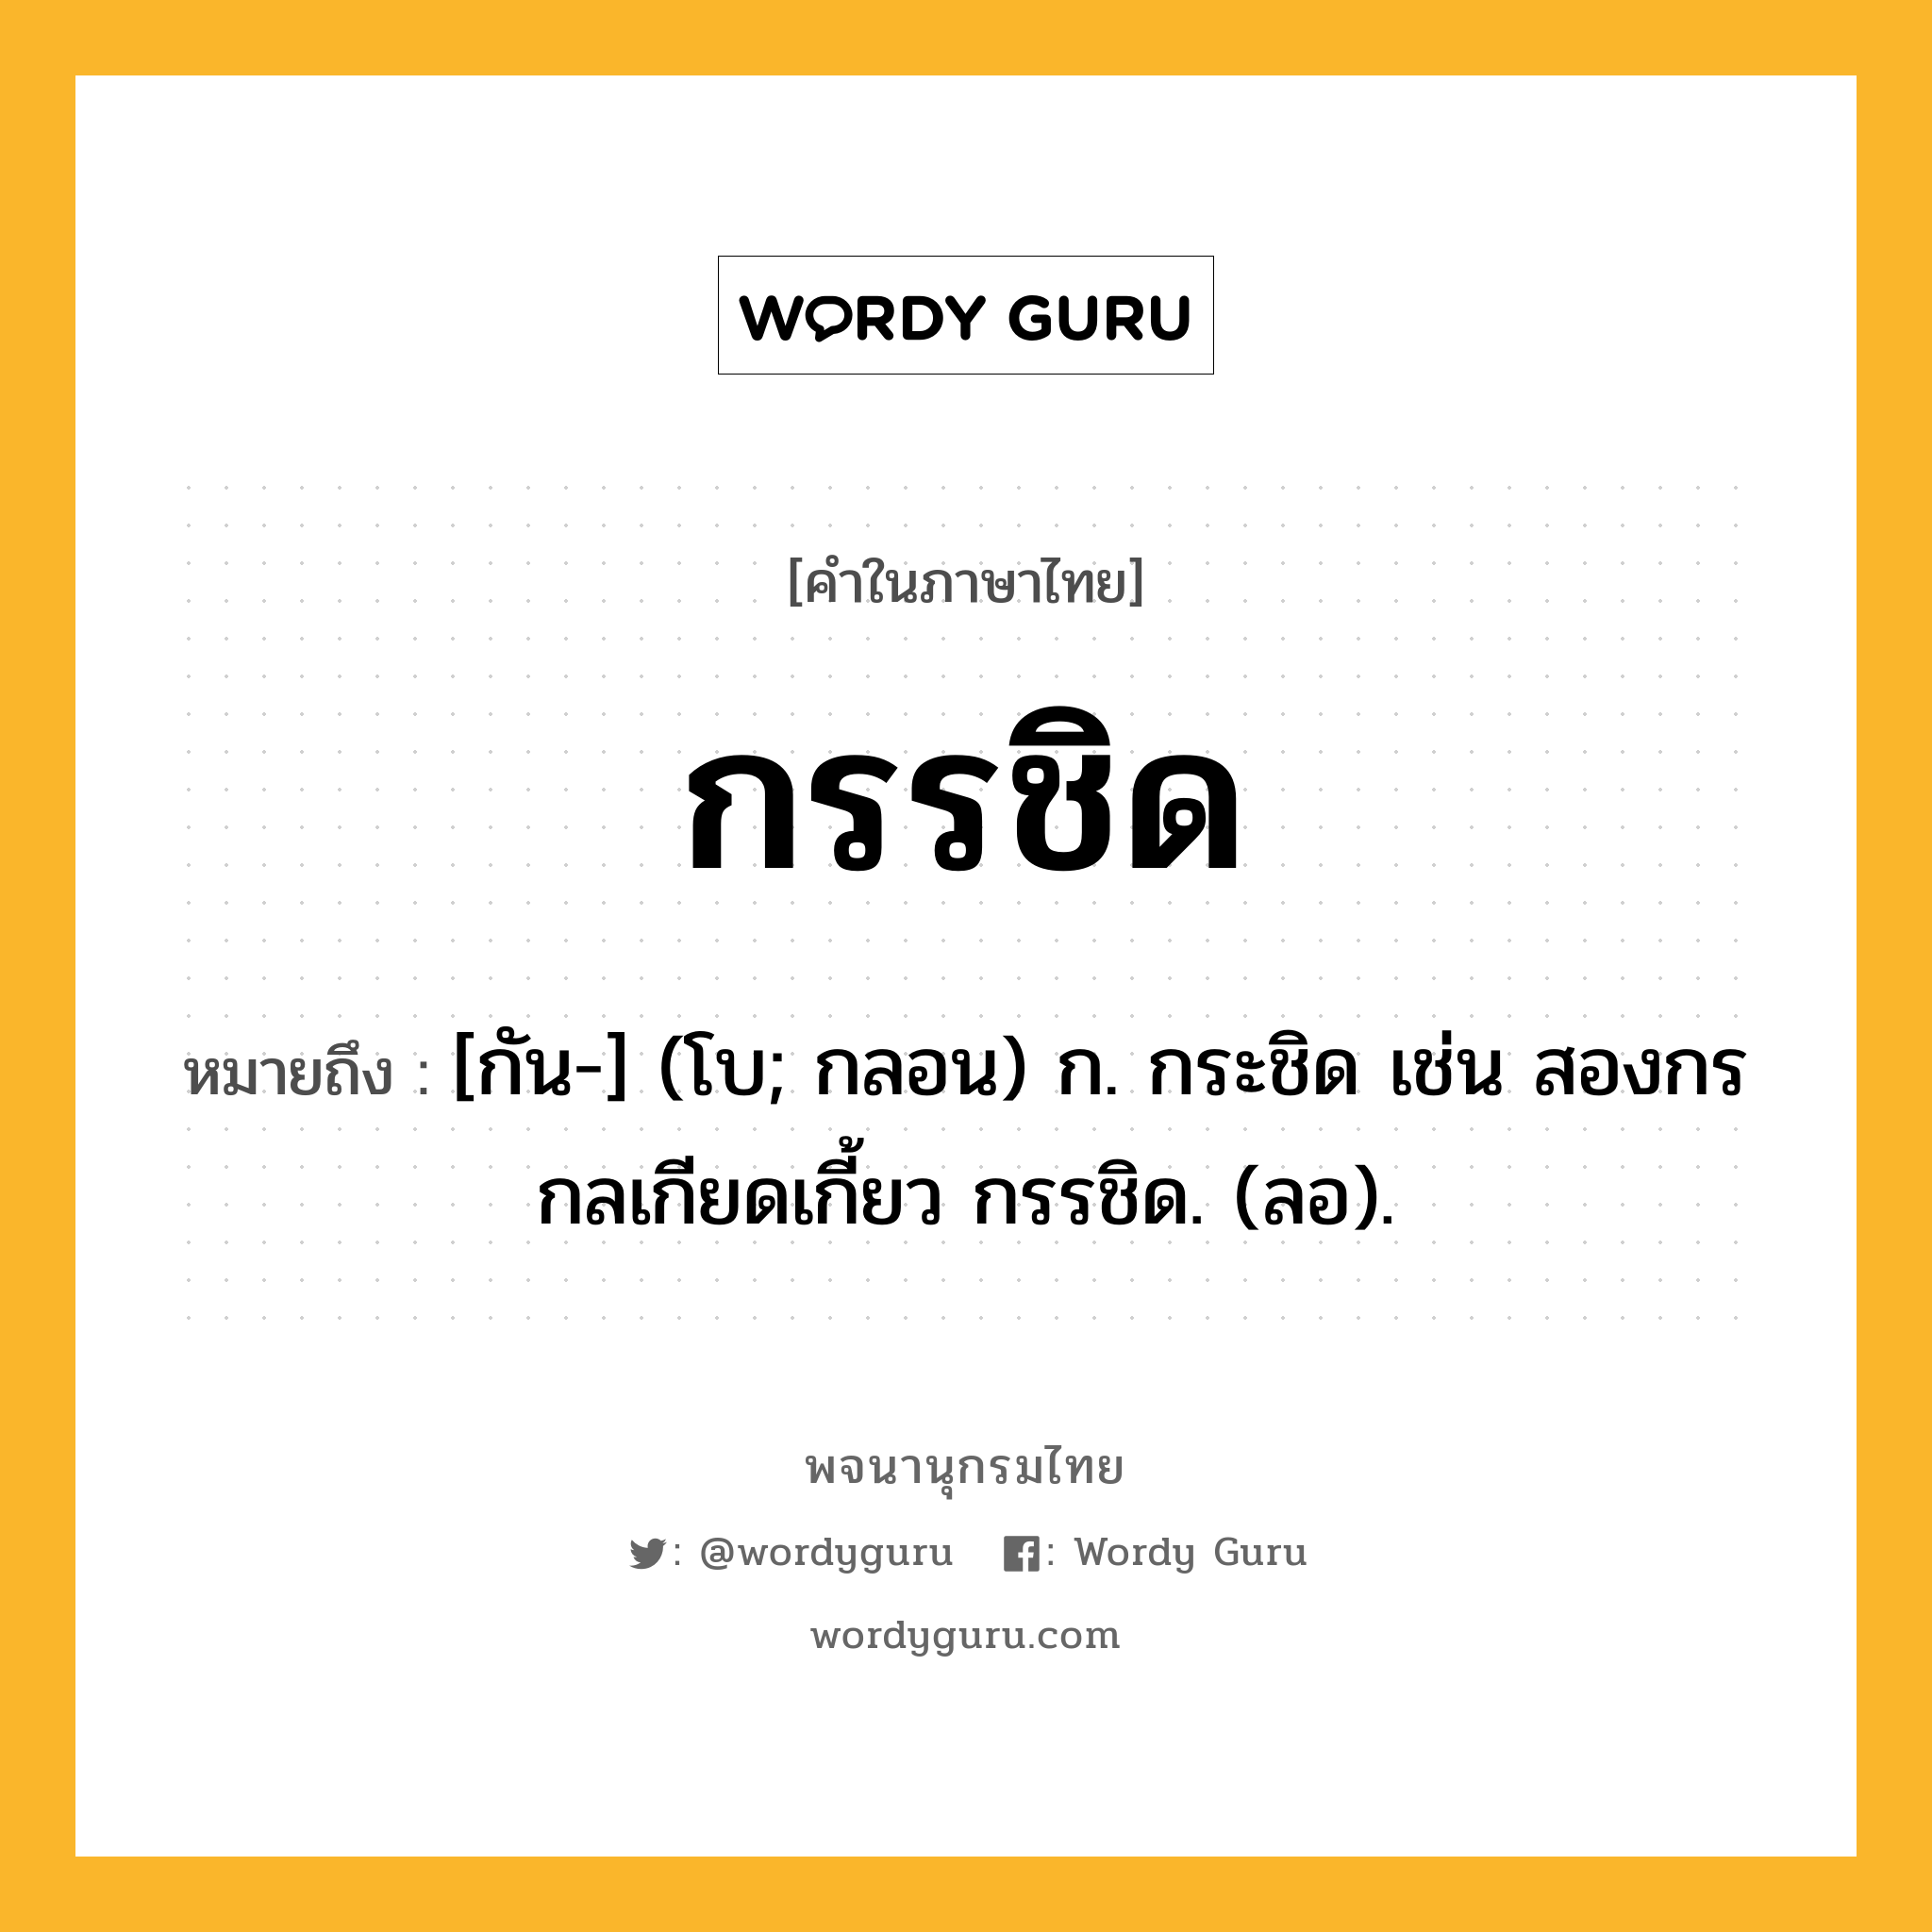 กรรชิด ความหมาย หมายถึงอะไร?, คำในภาษาไทย กรรชิด หมายถึง [กัน-] (โบ; กลอน) ก. กระชิด เช่น สองกรกลเกียดเกี้ยว กรรชิด. (ลอ).